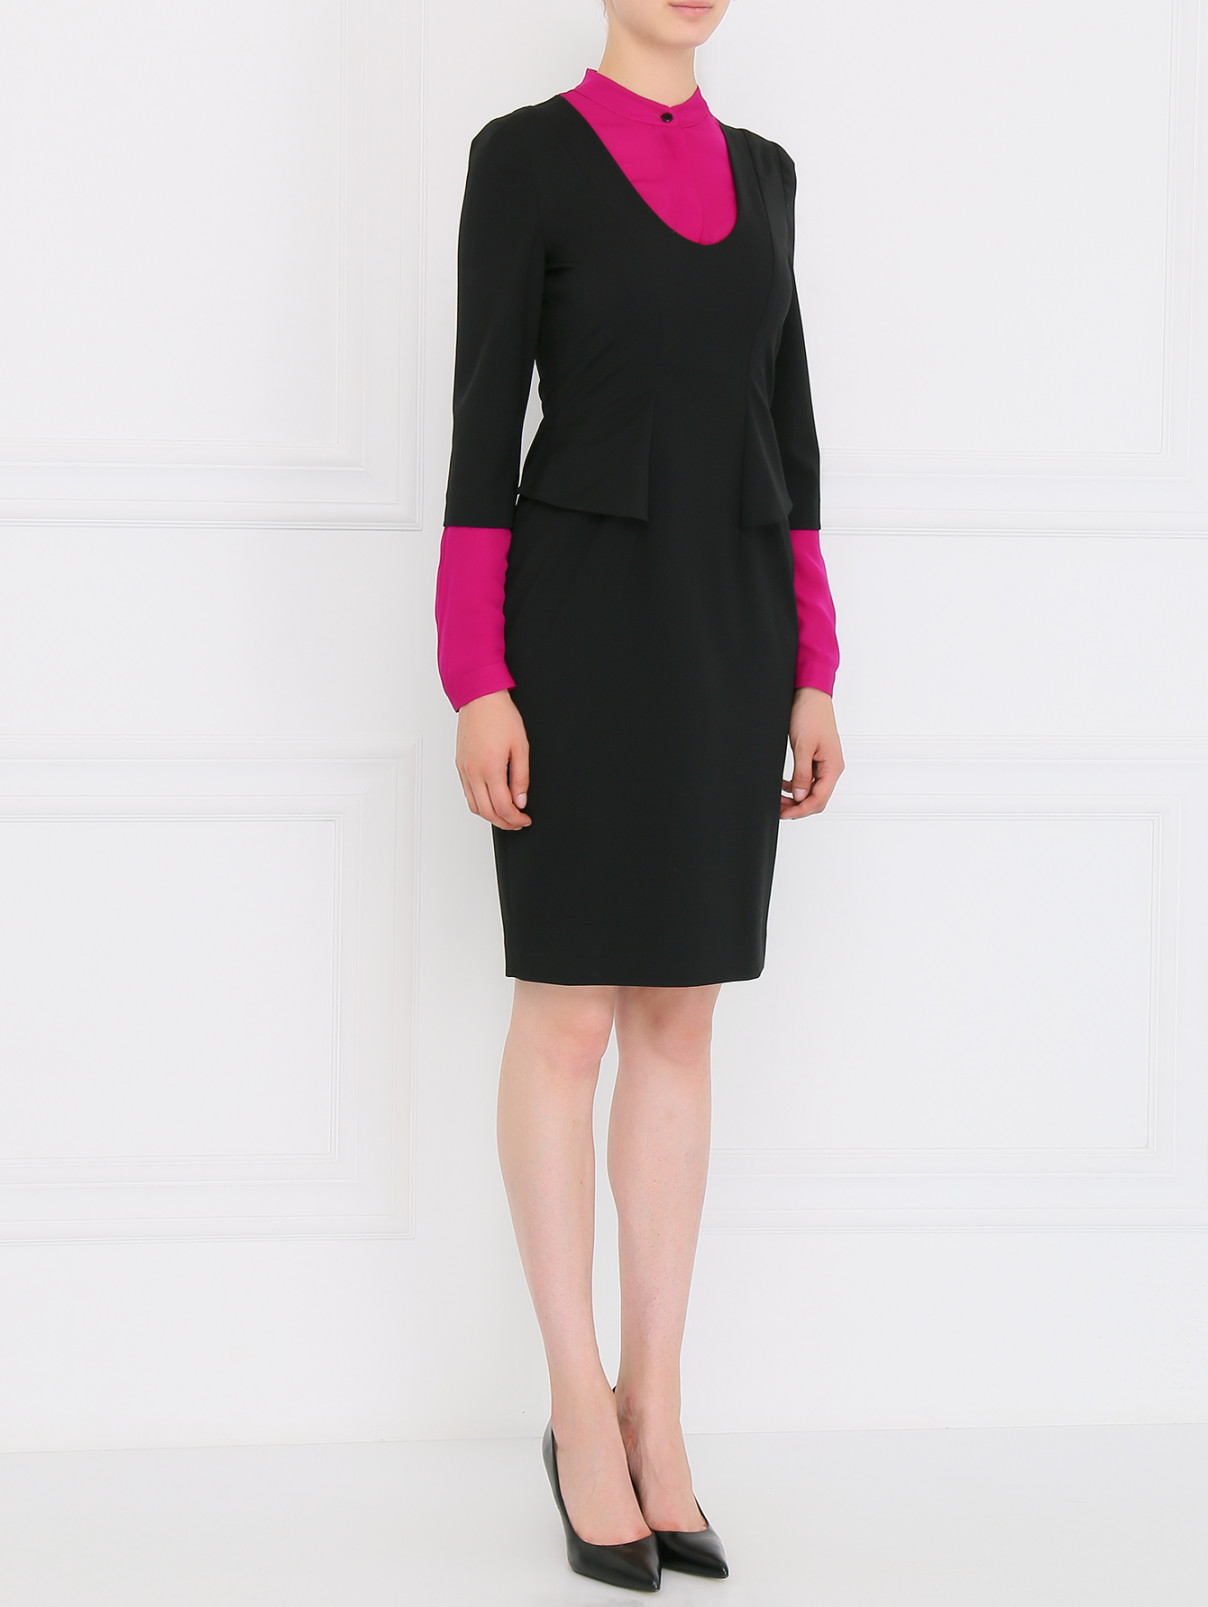 Платье прямого фасона из шерсти с контрастными вставками Emporio Armani  –  Модель Общий вид  – Цвет:  Черный